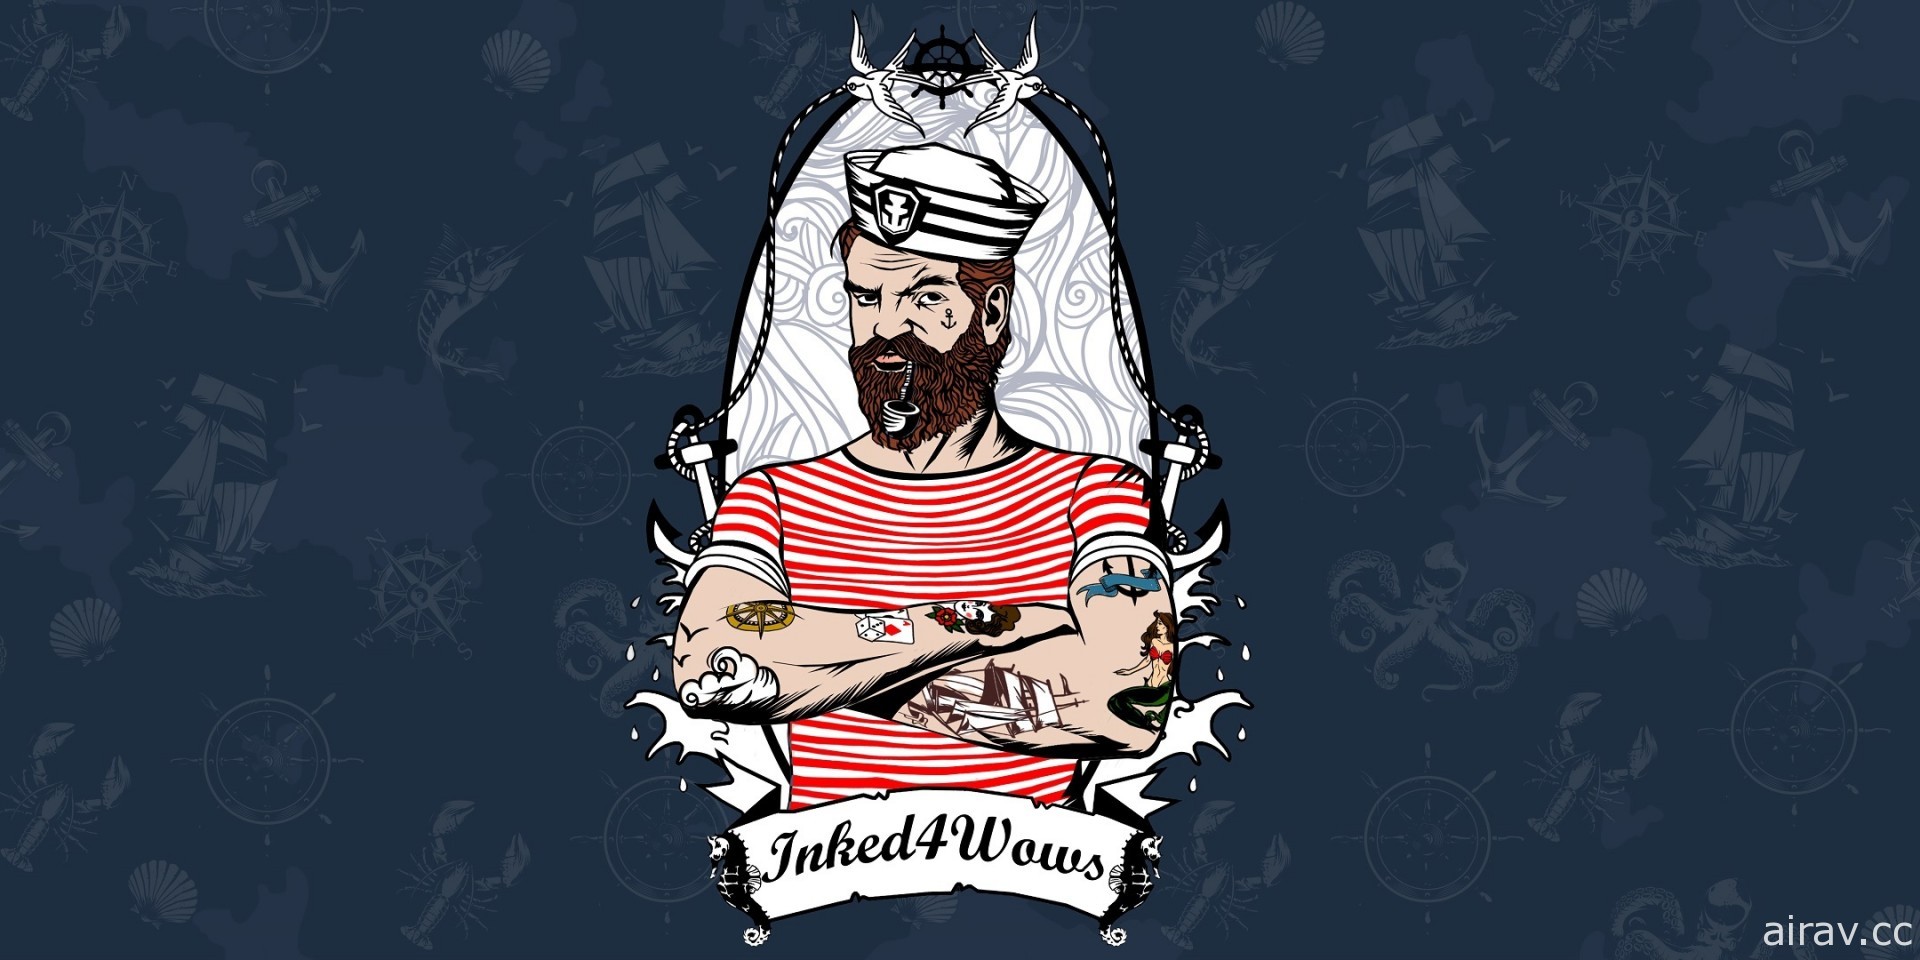 《戰艦世界》公布全球紋身投票競賽優勝者 以 Bismarck 主力艦圖案紋身獲得玩家青睞